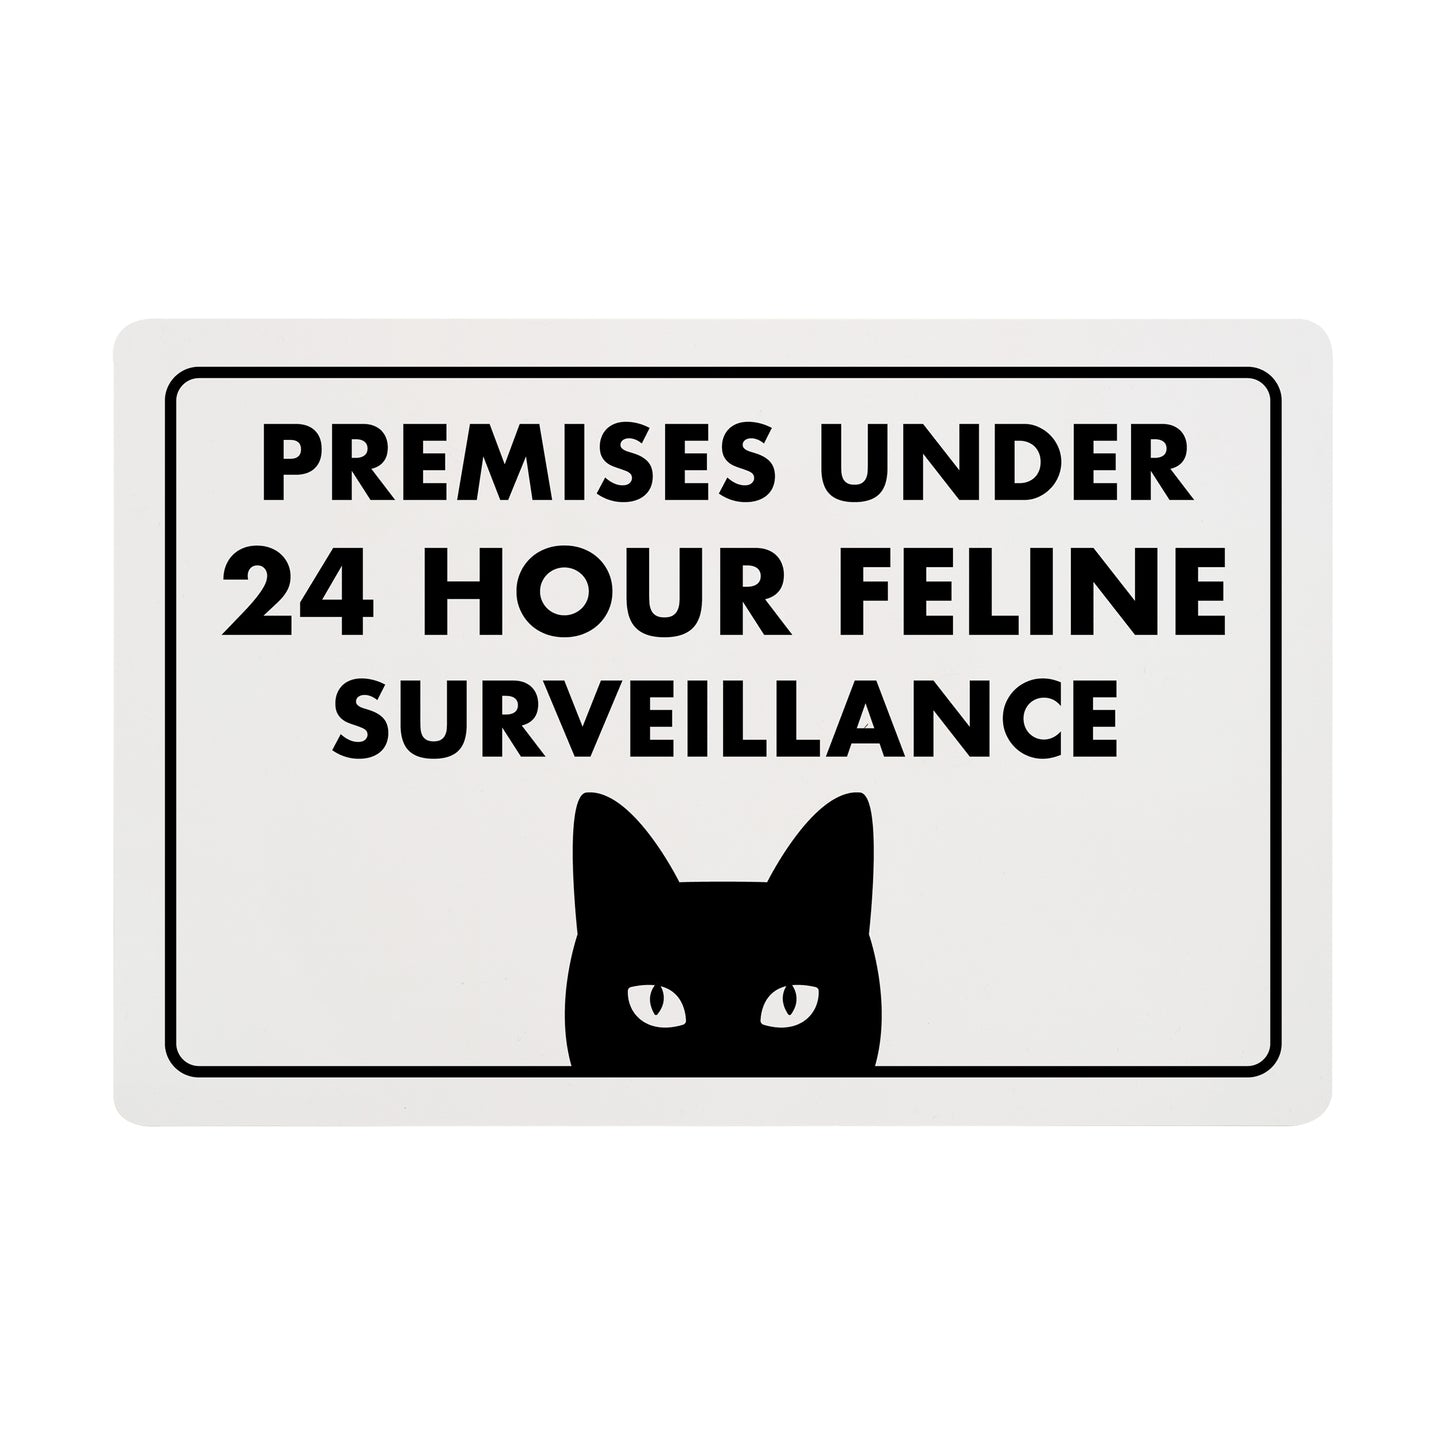 Premises Under 24 Hour Feline Surveillance - 8" x 12" Funny Plastic (PVC) Sign